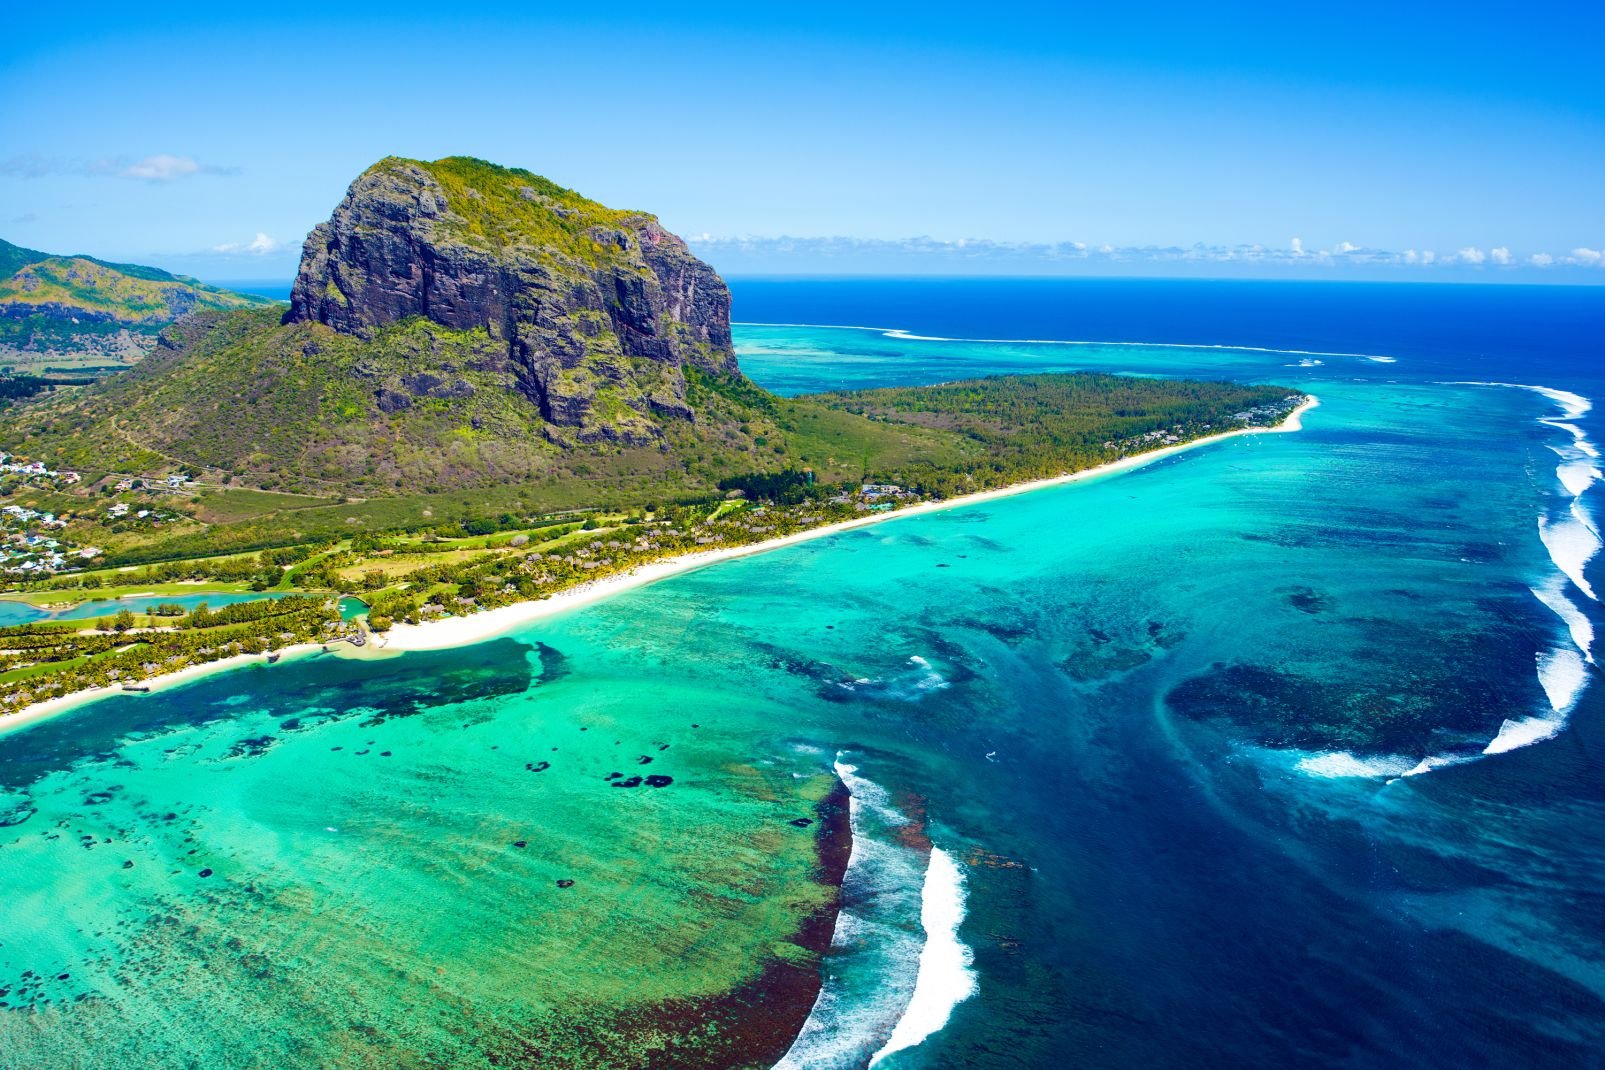 La costa meridionale delle Mauritius è la costa dell'isola più famosa per il suo carattere selvaggio ed autentico e per le sue strutture alberghiere, poco numerose, ma ben diversificate.Coloro che desiderano scoprire i paesaggi più spettacolari della zona, sceglieranno un hotel ai piedi di Le Morne, sulla punta sud occidentale. Qui si trovano le più belle spiagge della zona meridionale. Sappiate però ...